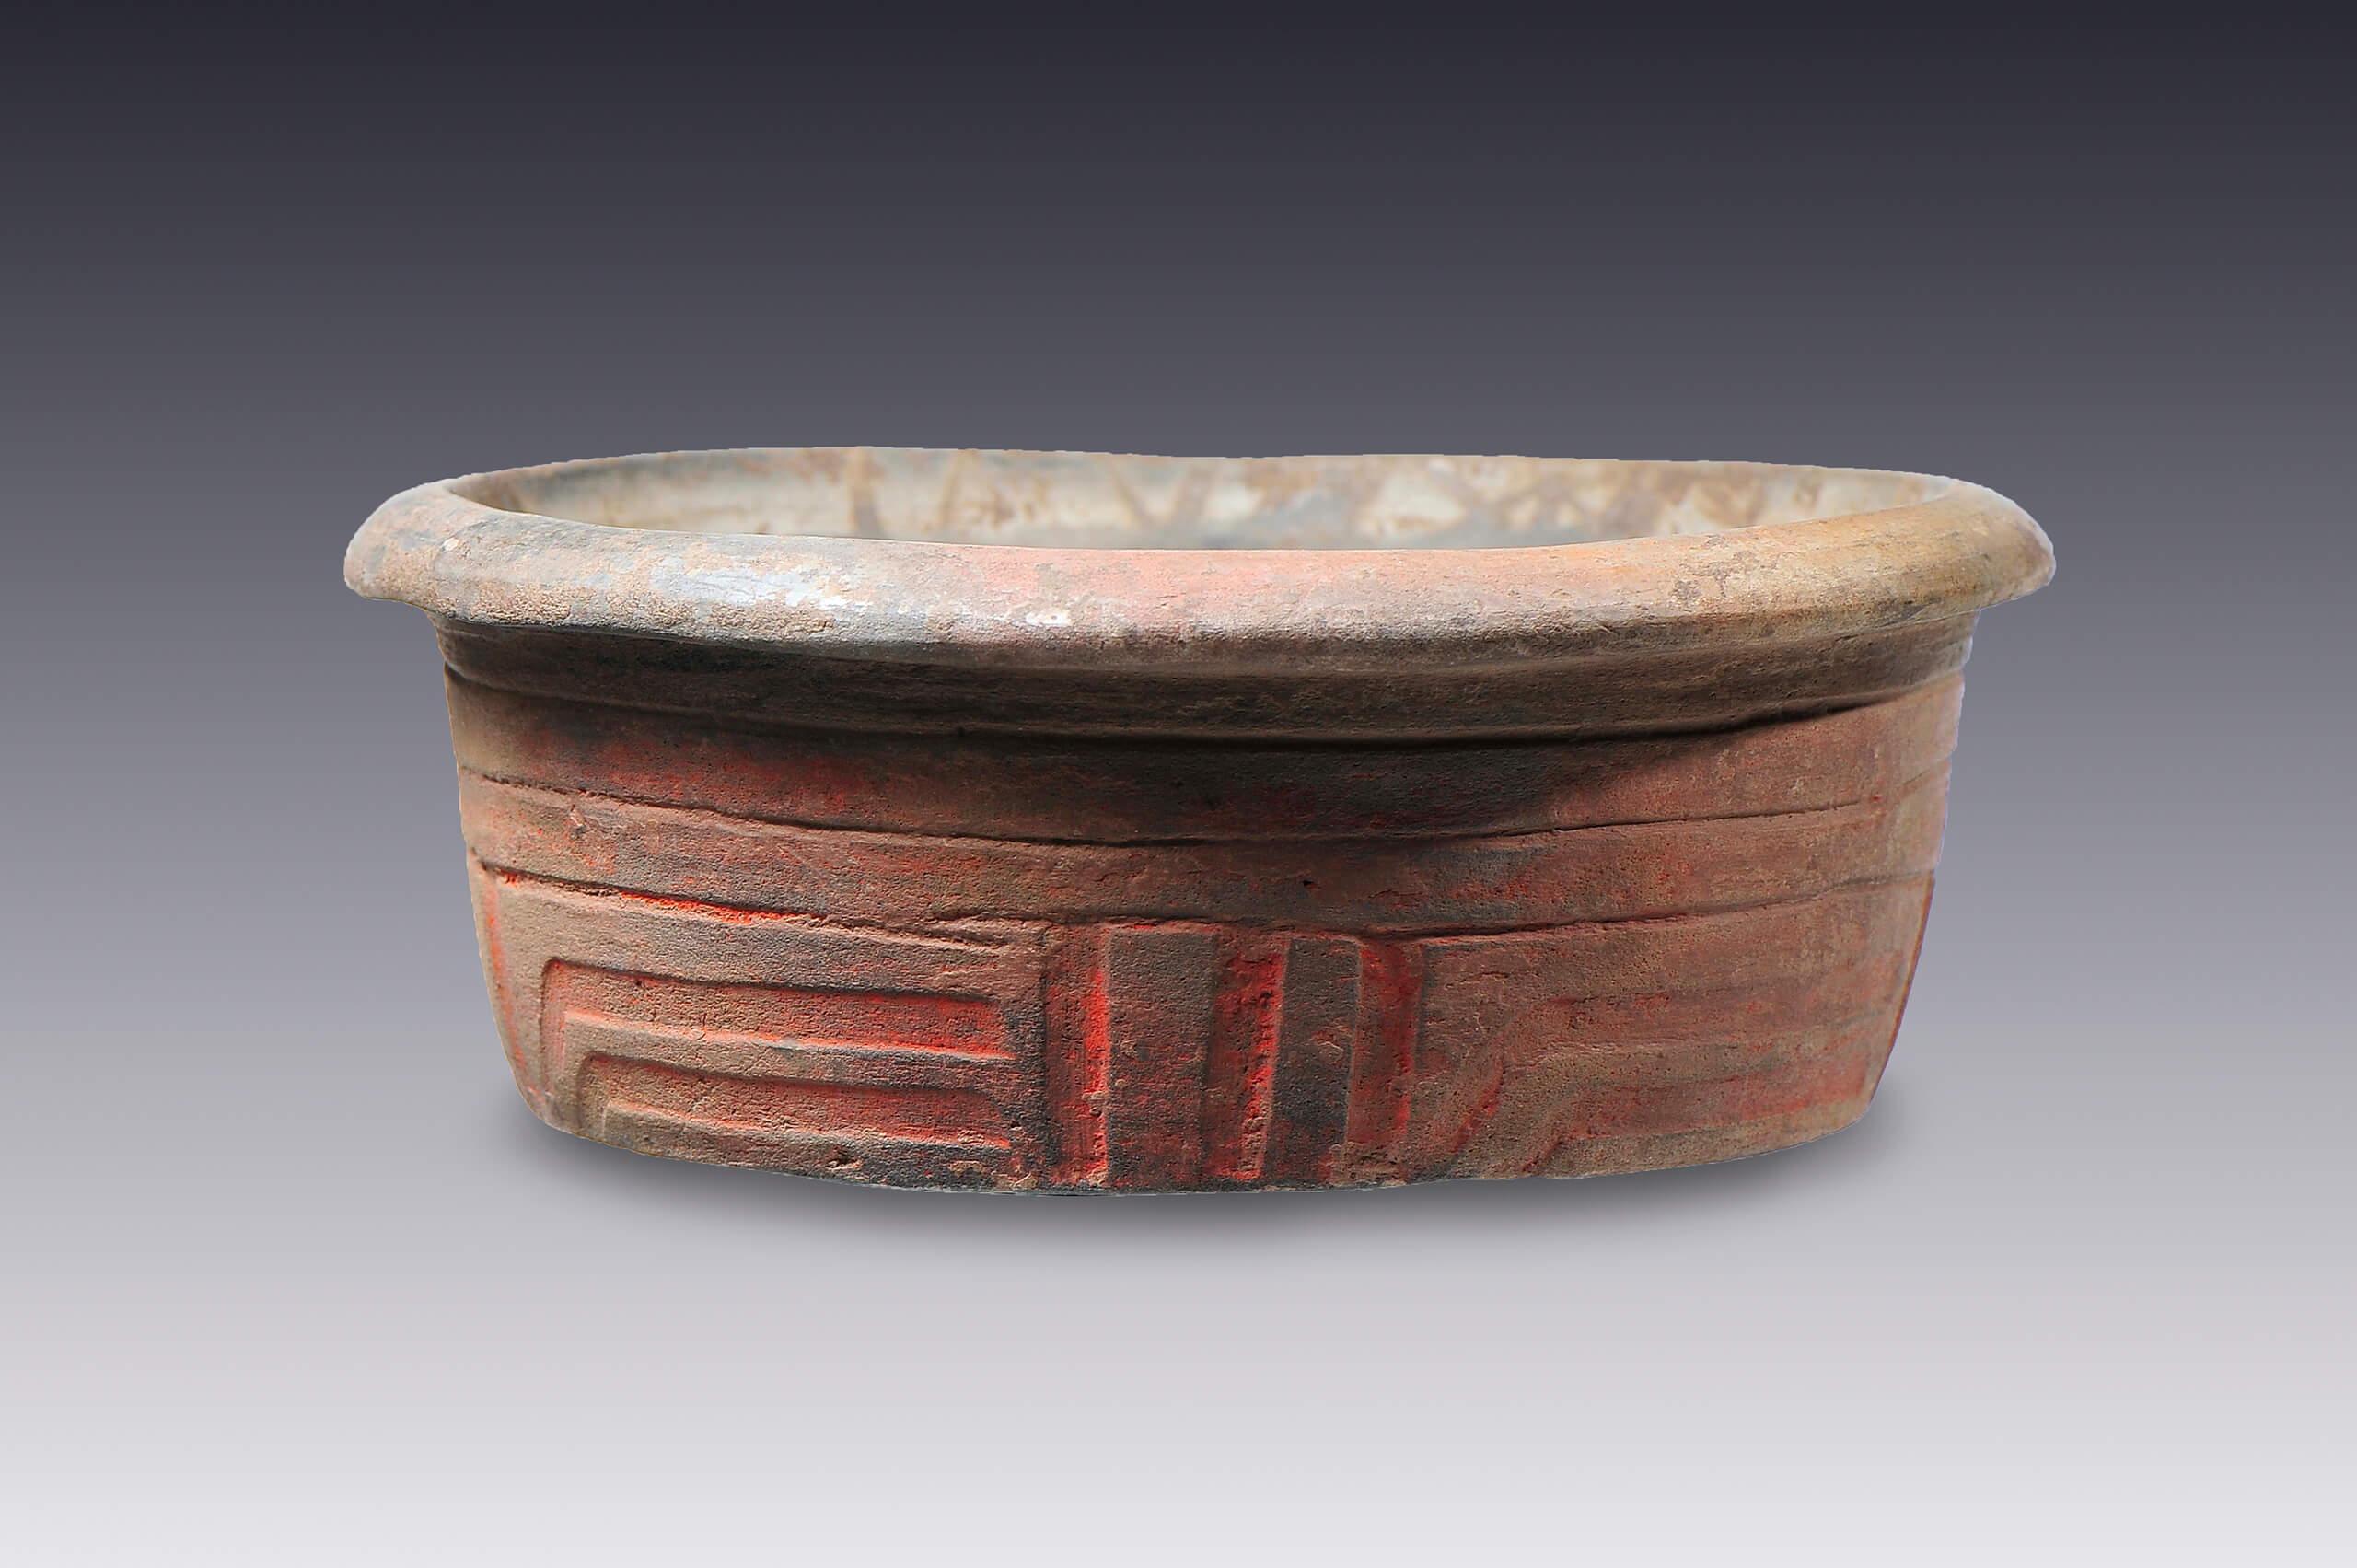 Vaso con reborde labial y decoración esgrafiada | El México antiguo. Salas de Arte Prehispánico | Museo Amparo, Puebla